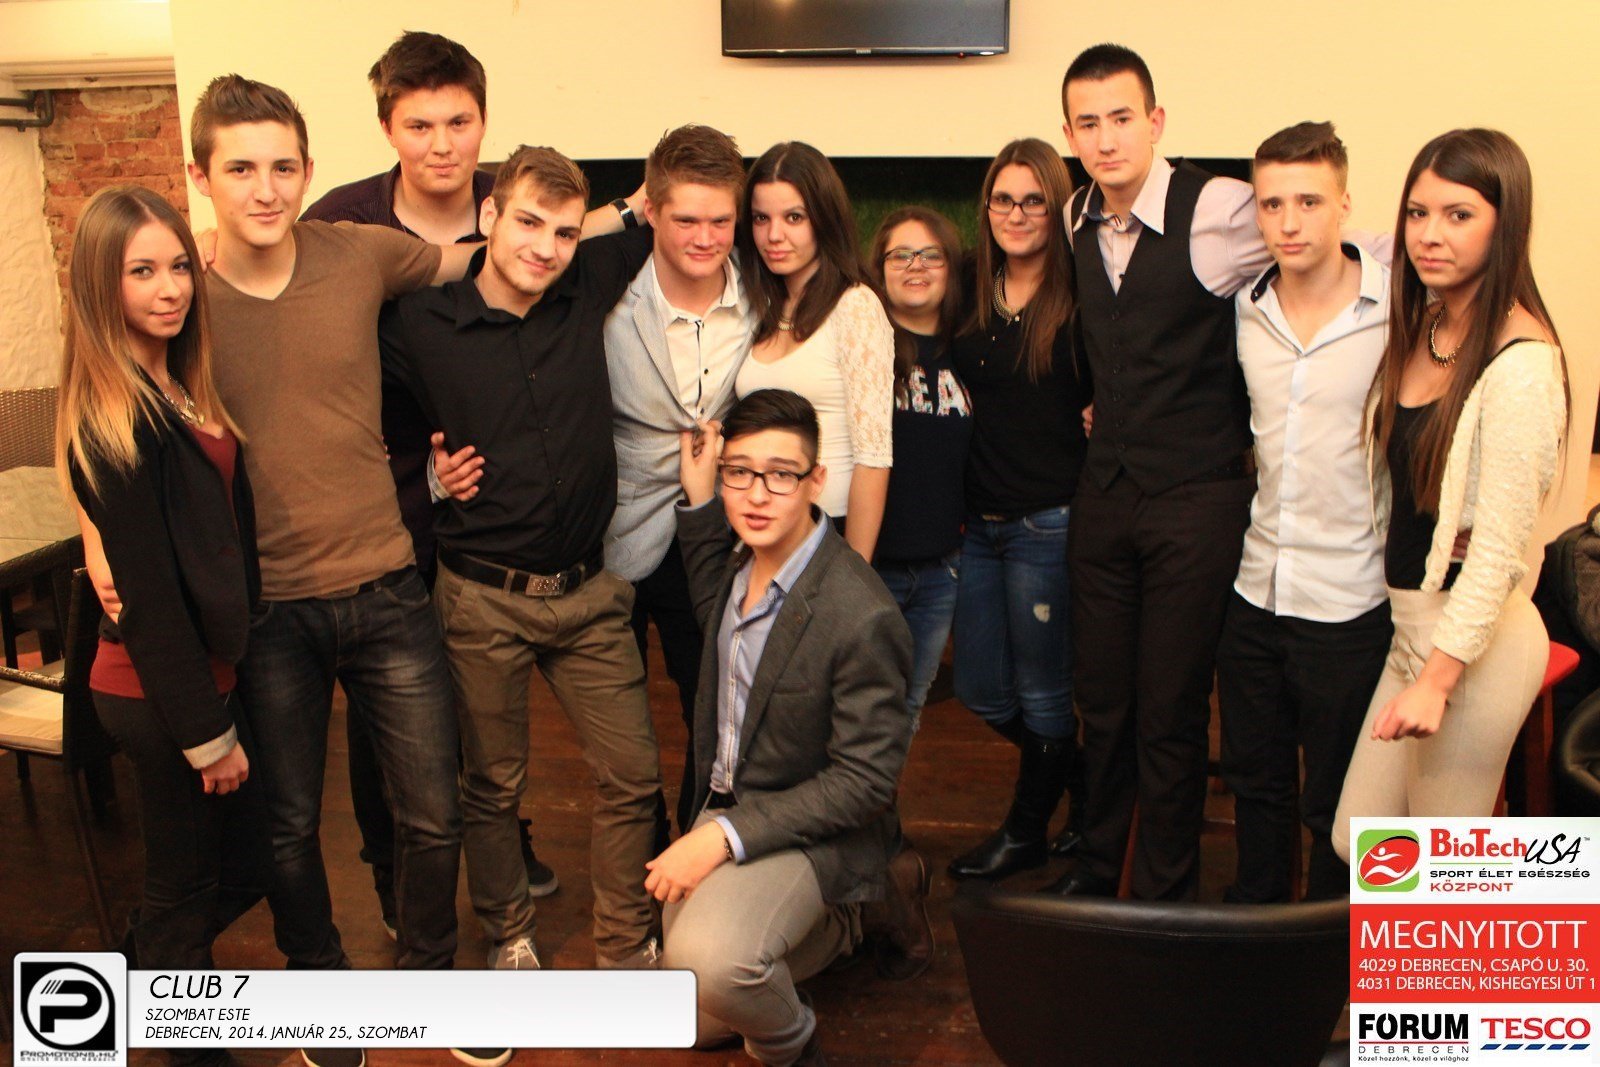 Debrecen,Club 7- 2014. Január 25., szombat este